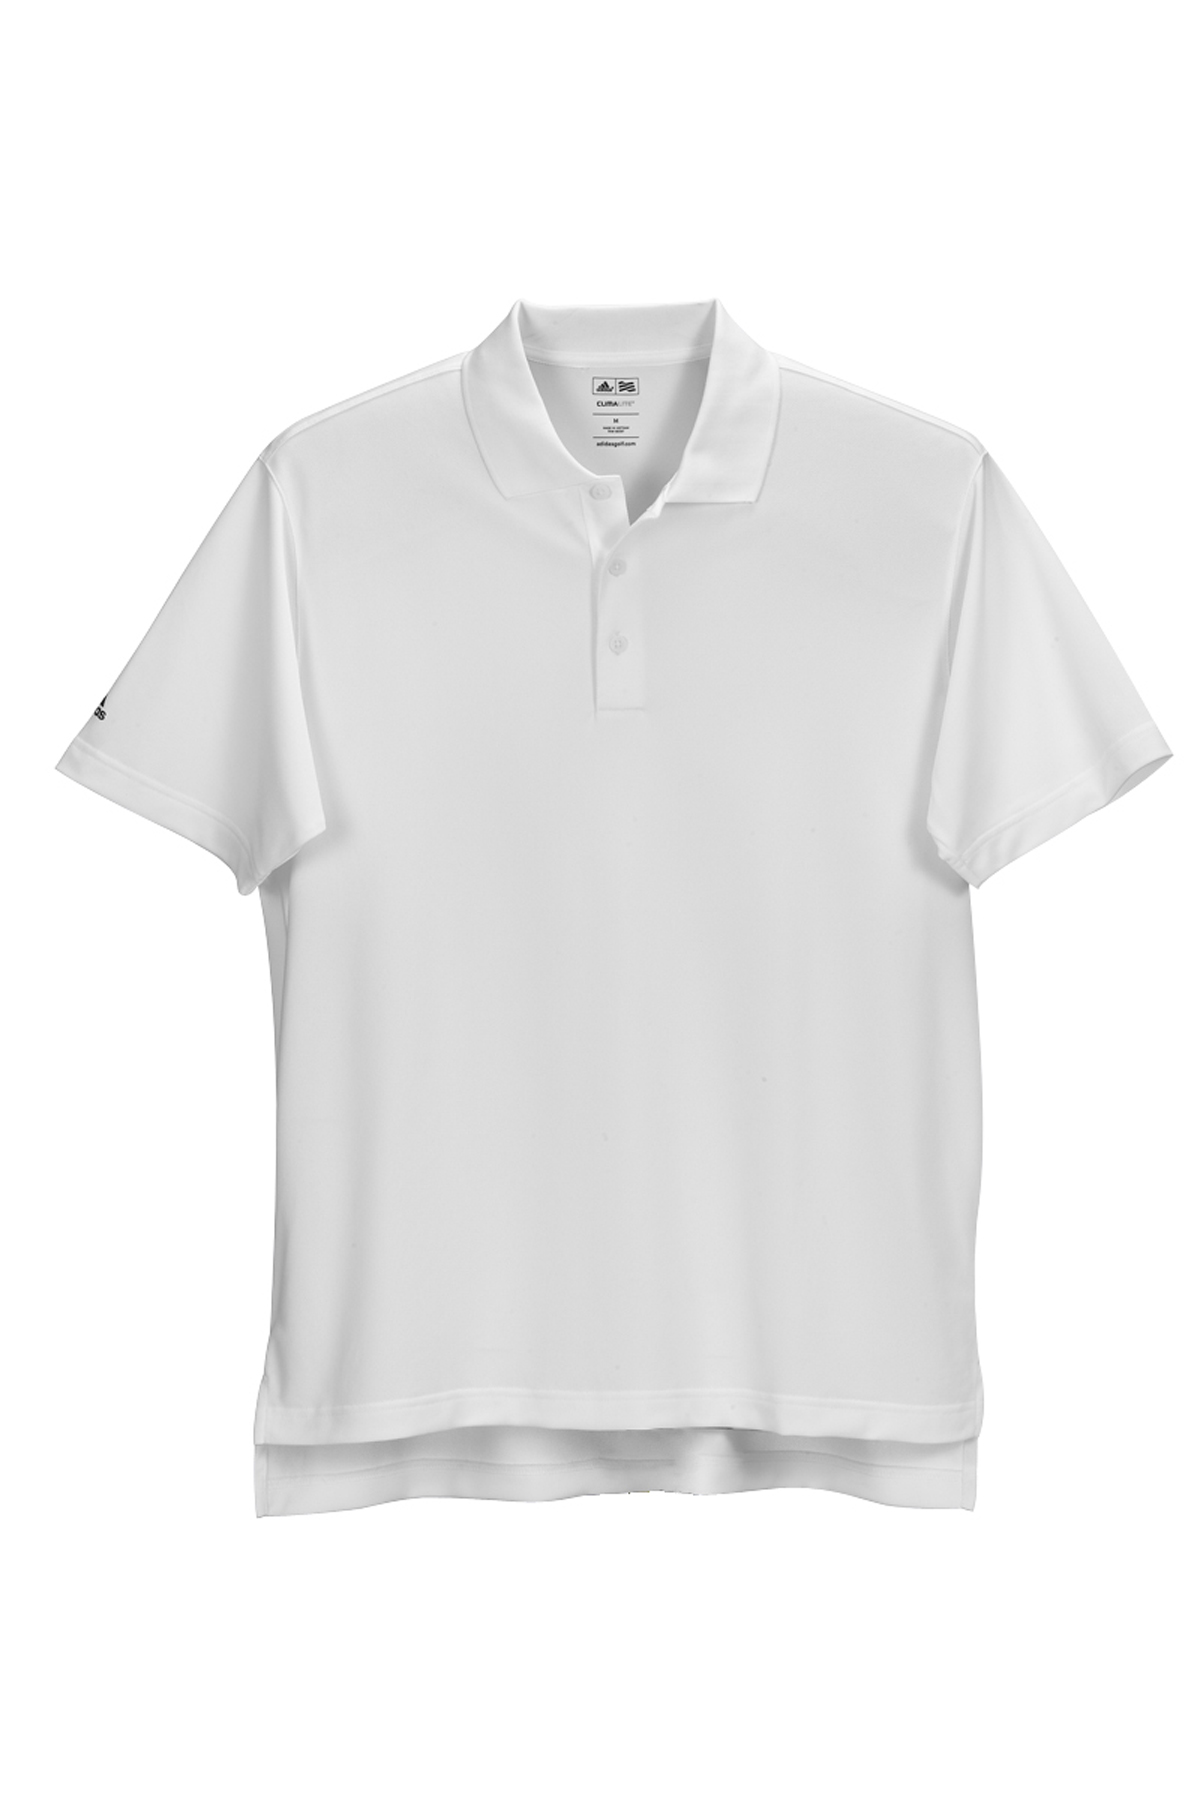 adidas ADIDA130 - ClimaLite® Basic Short Sleeve Polo